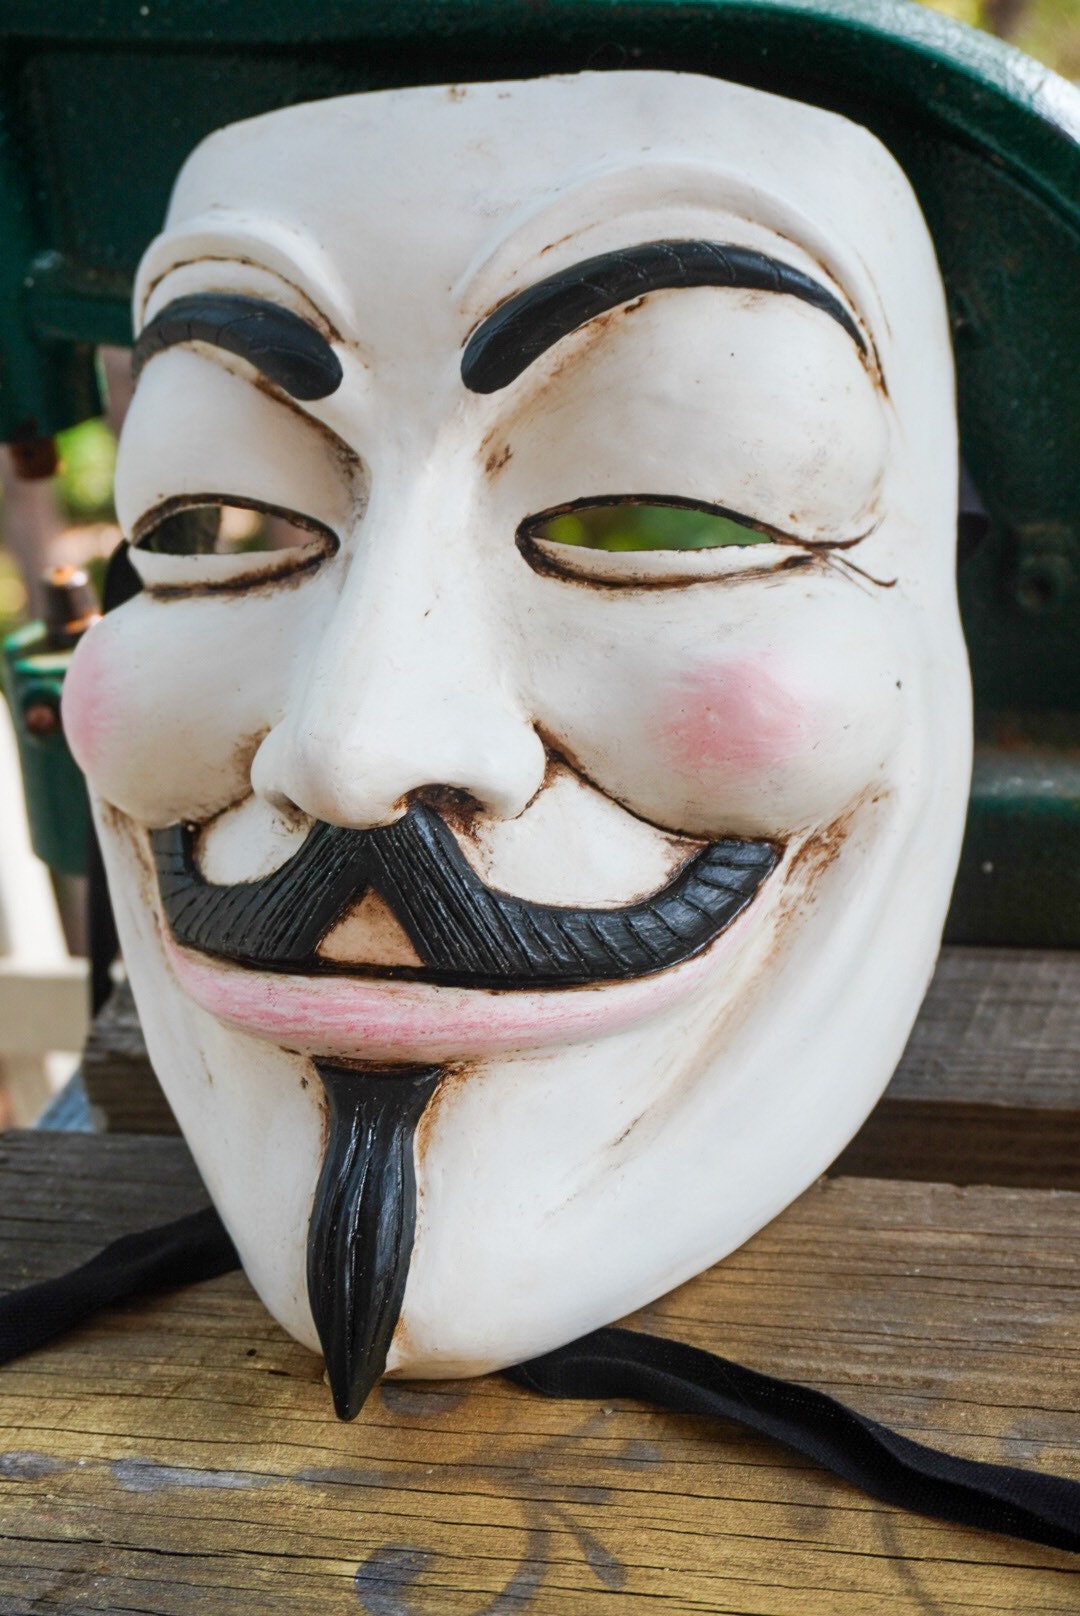 LIMITED EDITION Mask ready - Guy Fawkes V For Vendetta Original Mask Paper mask Resin mask Best model V de Venganza